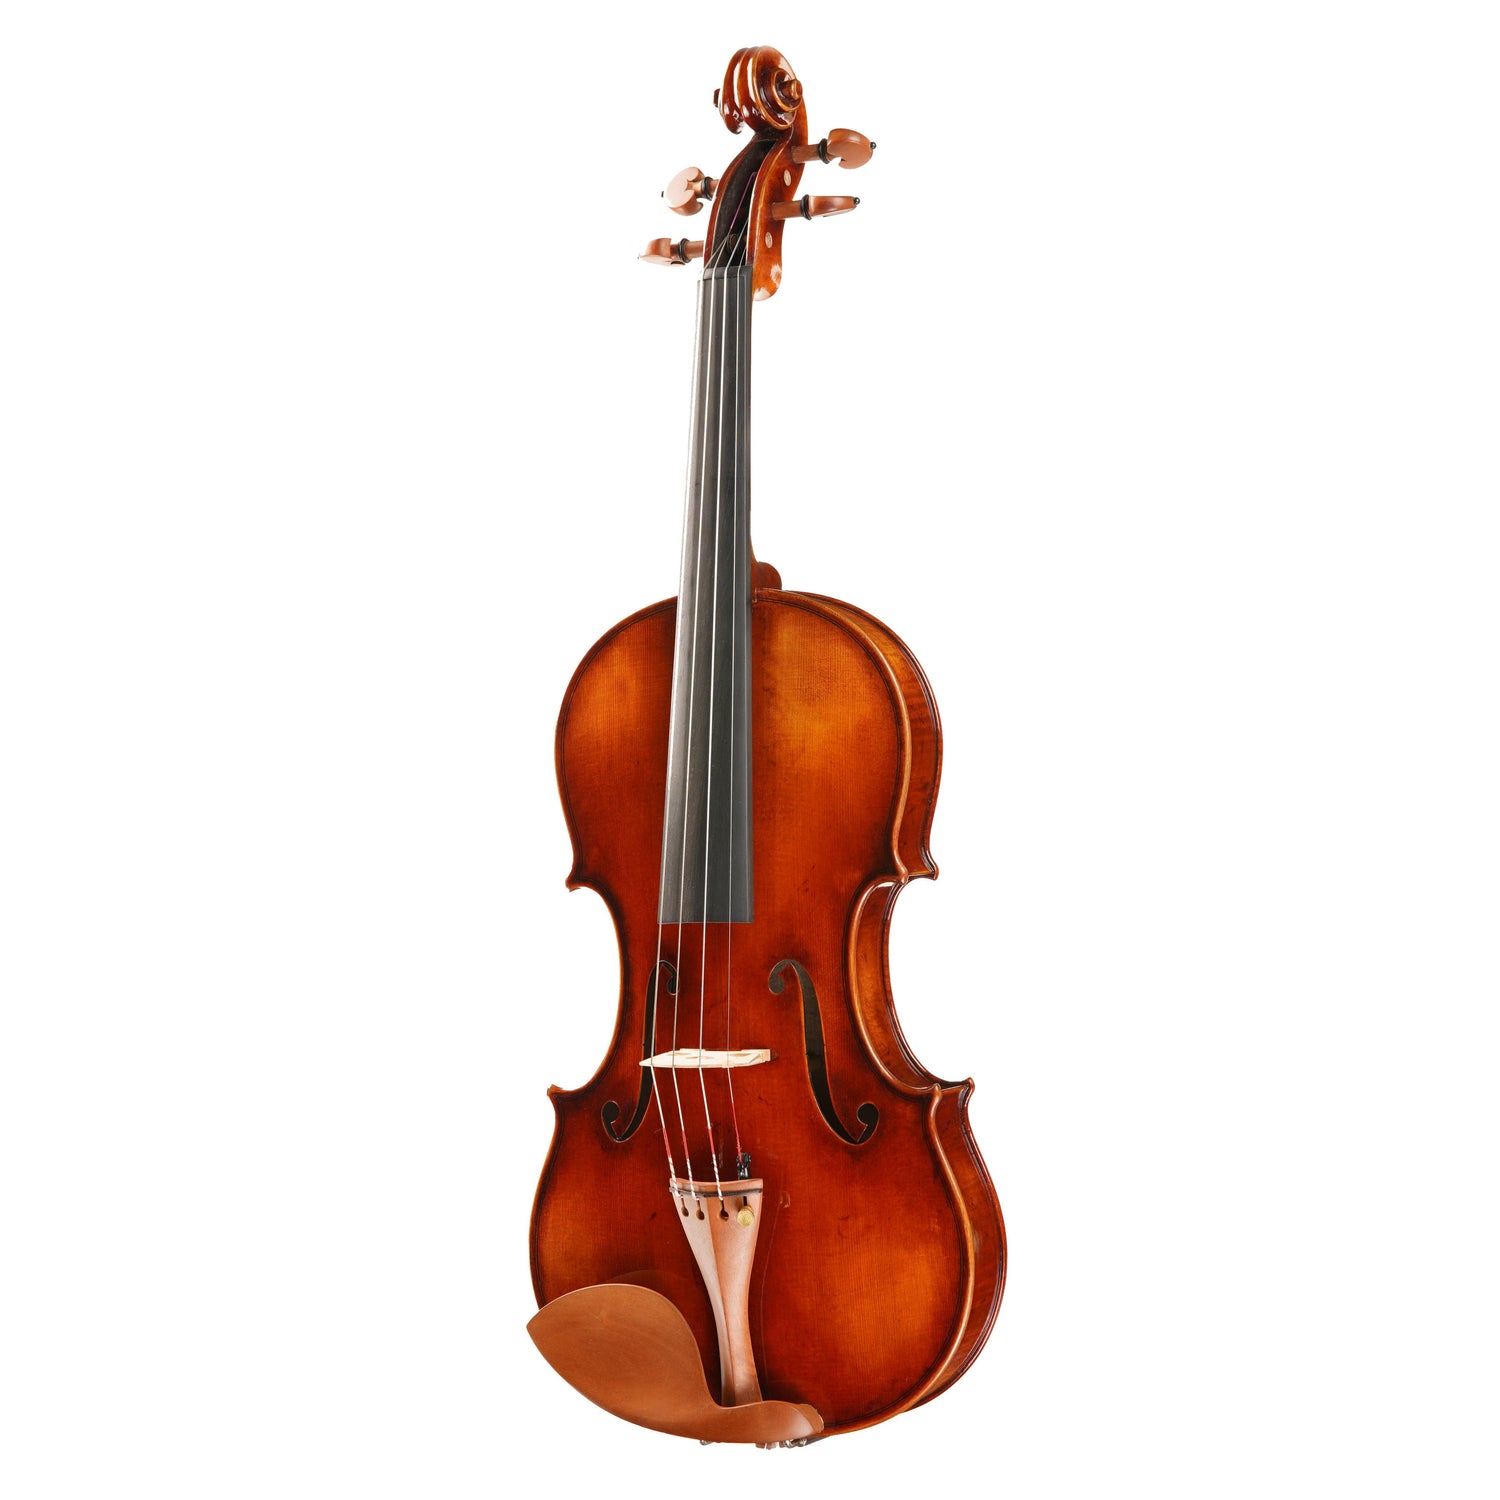 Advanced Violin